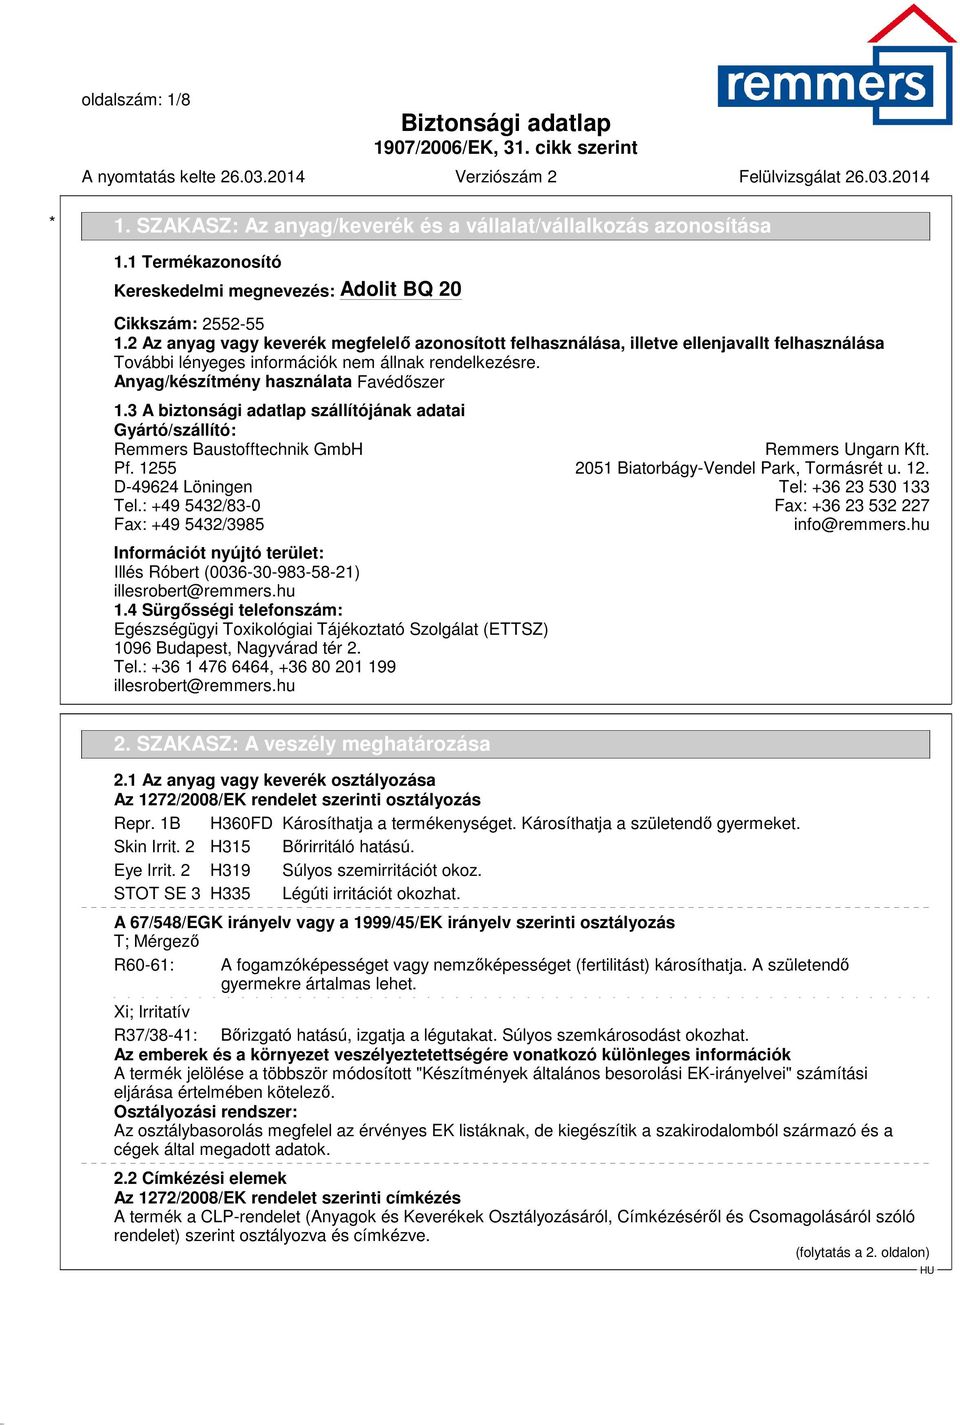 3 A biztonsági adatlap szállítójának adatai Gyártó/szállító: Remmers Baustofftechnik GmbH Remmers Ungarn Kft. Pf. 1255 2051 Biatorbágy-Vendel Park, Tormásrét u. 12. D-49624 Löningen Tel: +36 23 530 133 Tel.